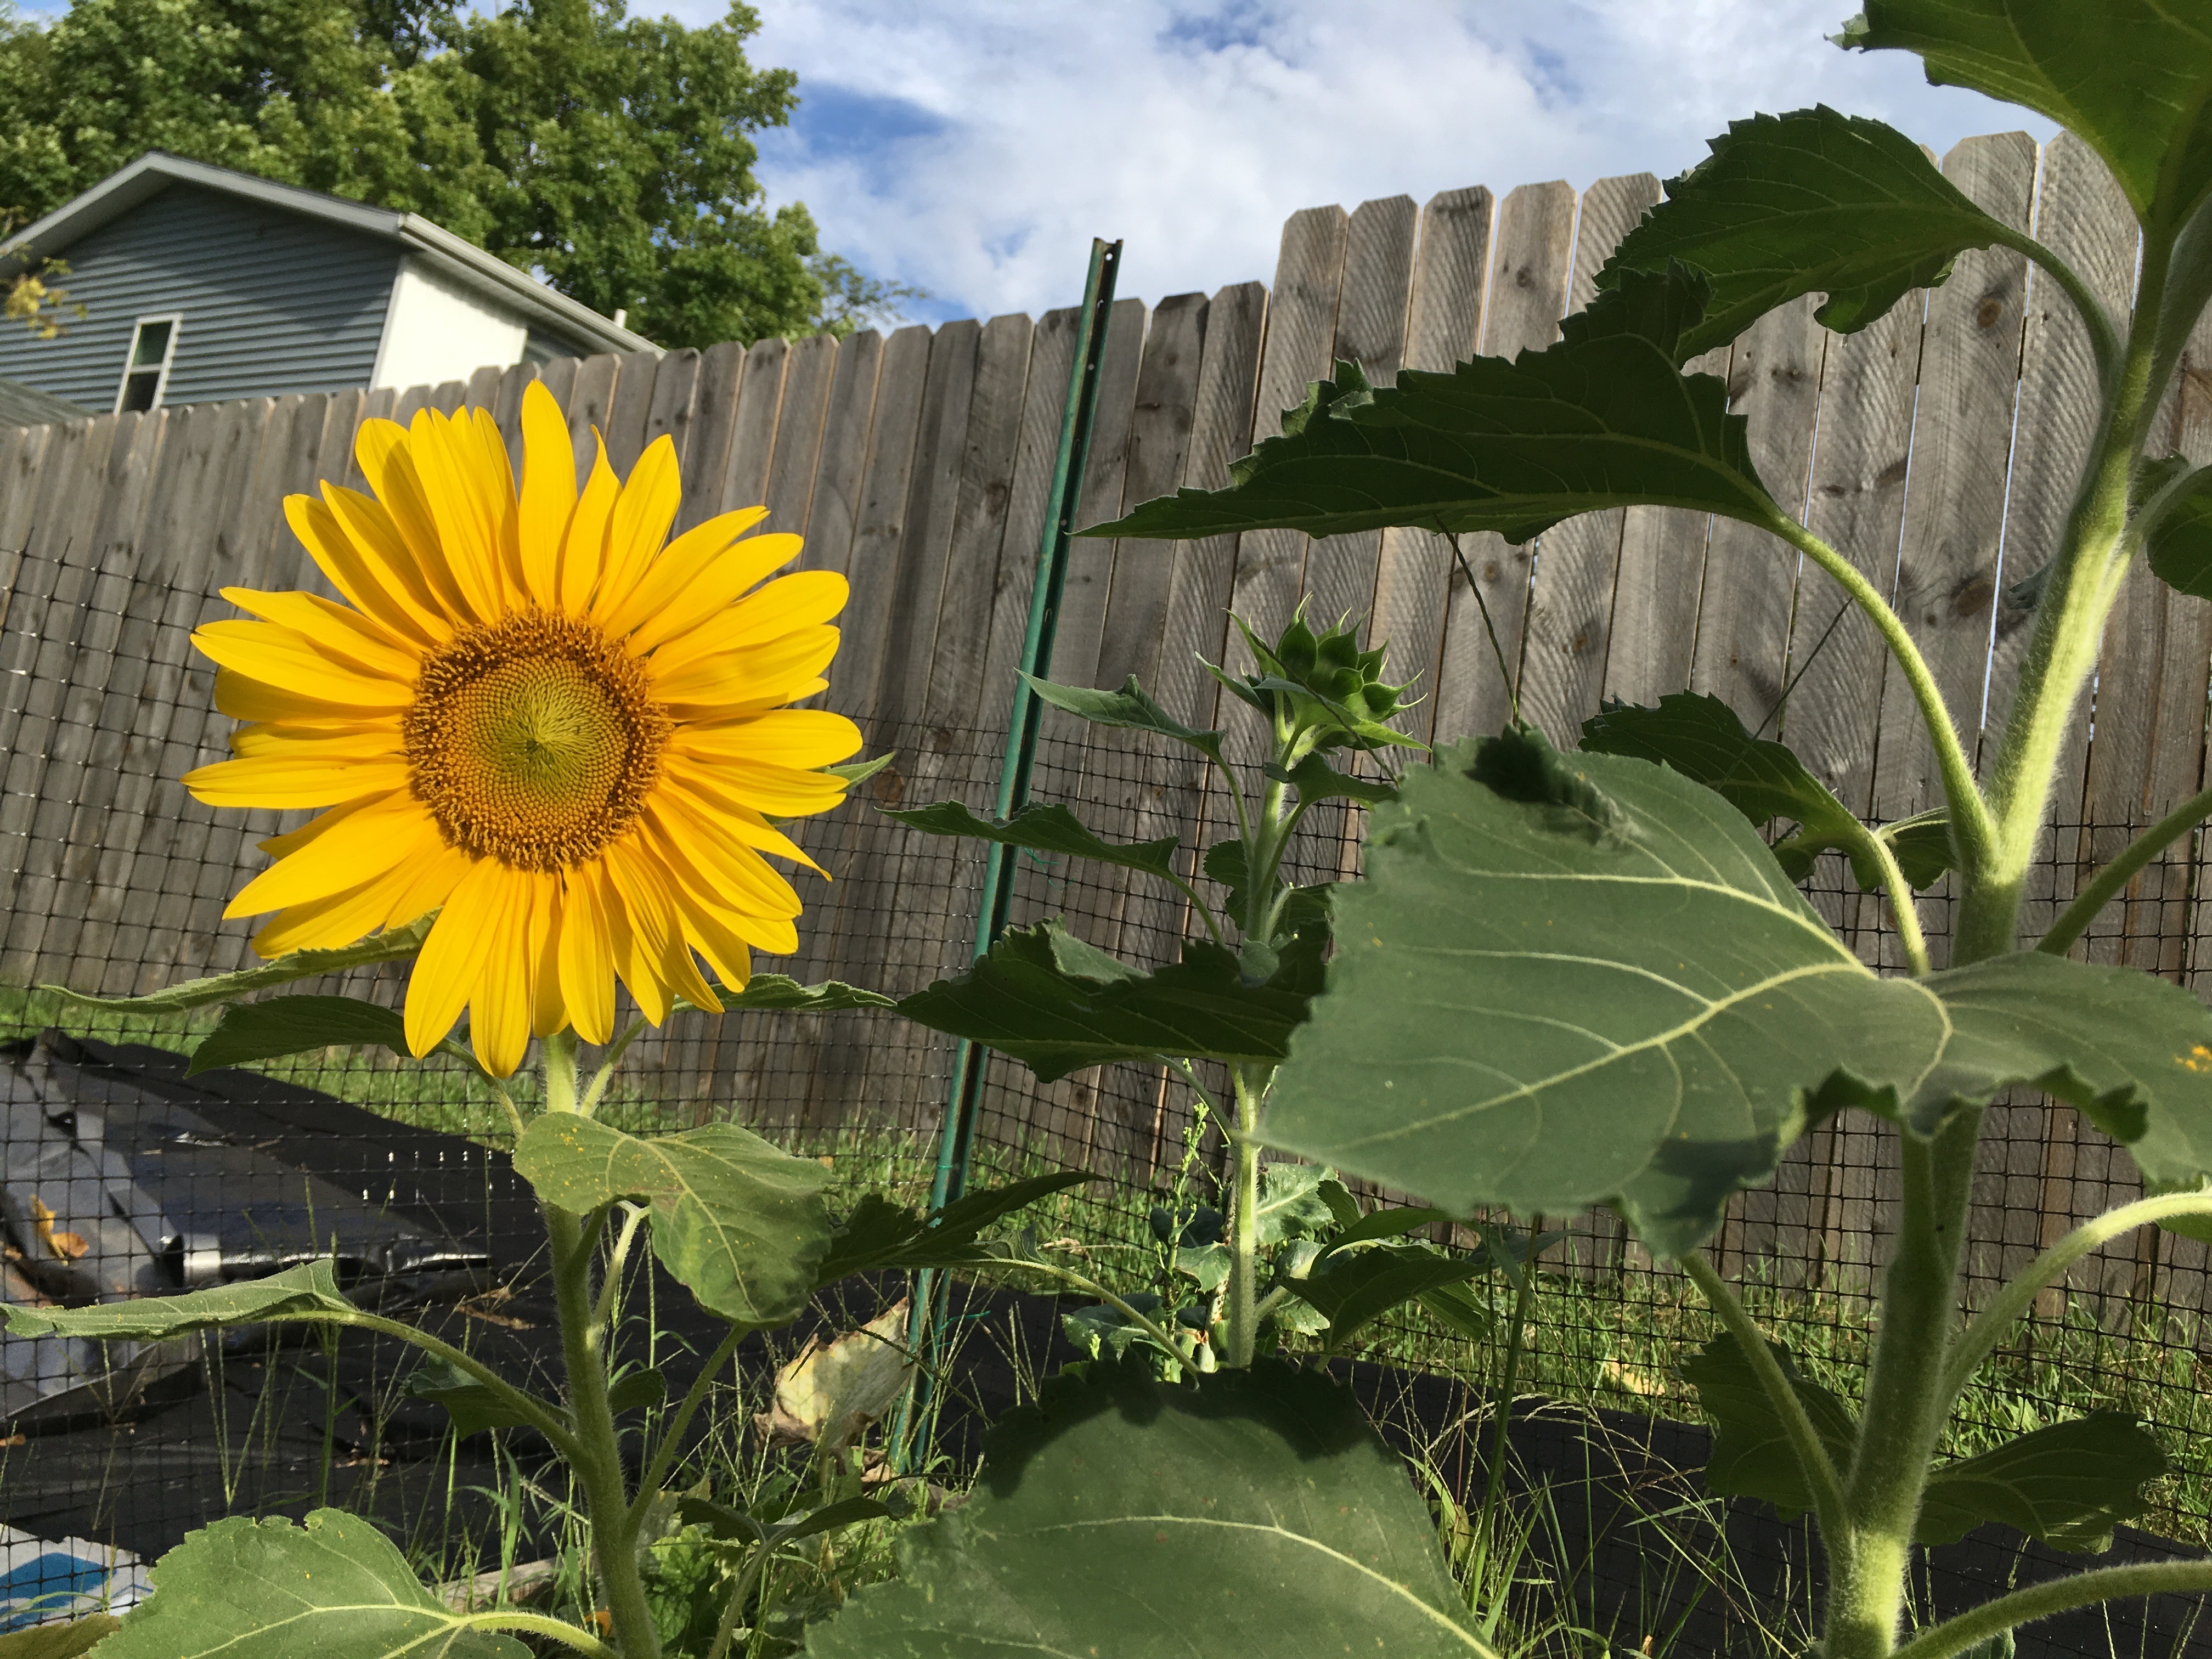 ellen's sunflower garden